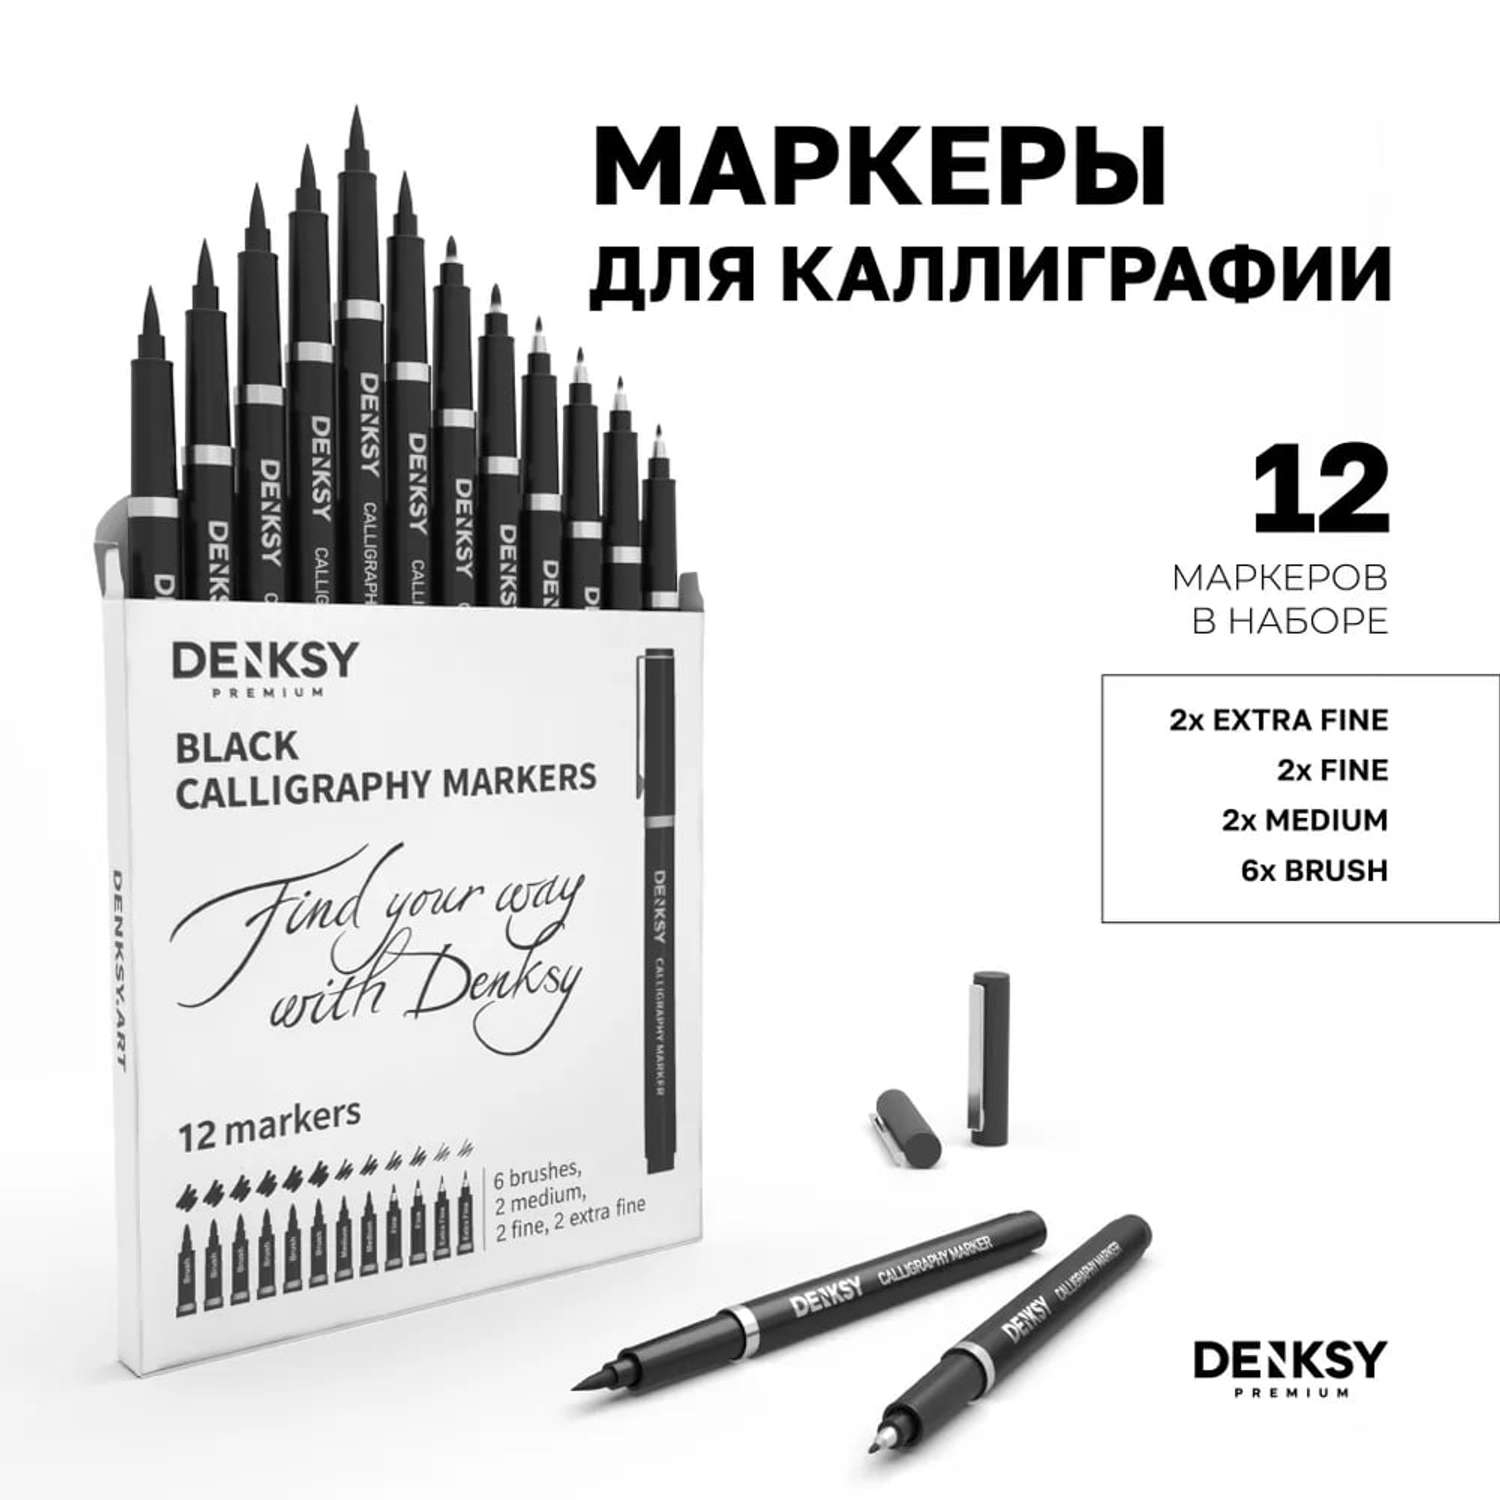 Маркеры для каллиграфии DENKSY 12 штук с черными чернилами - фото 1